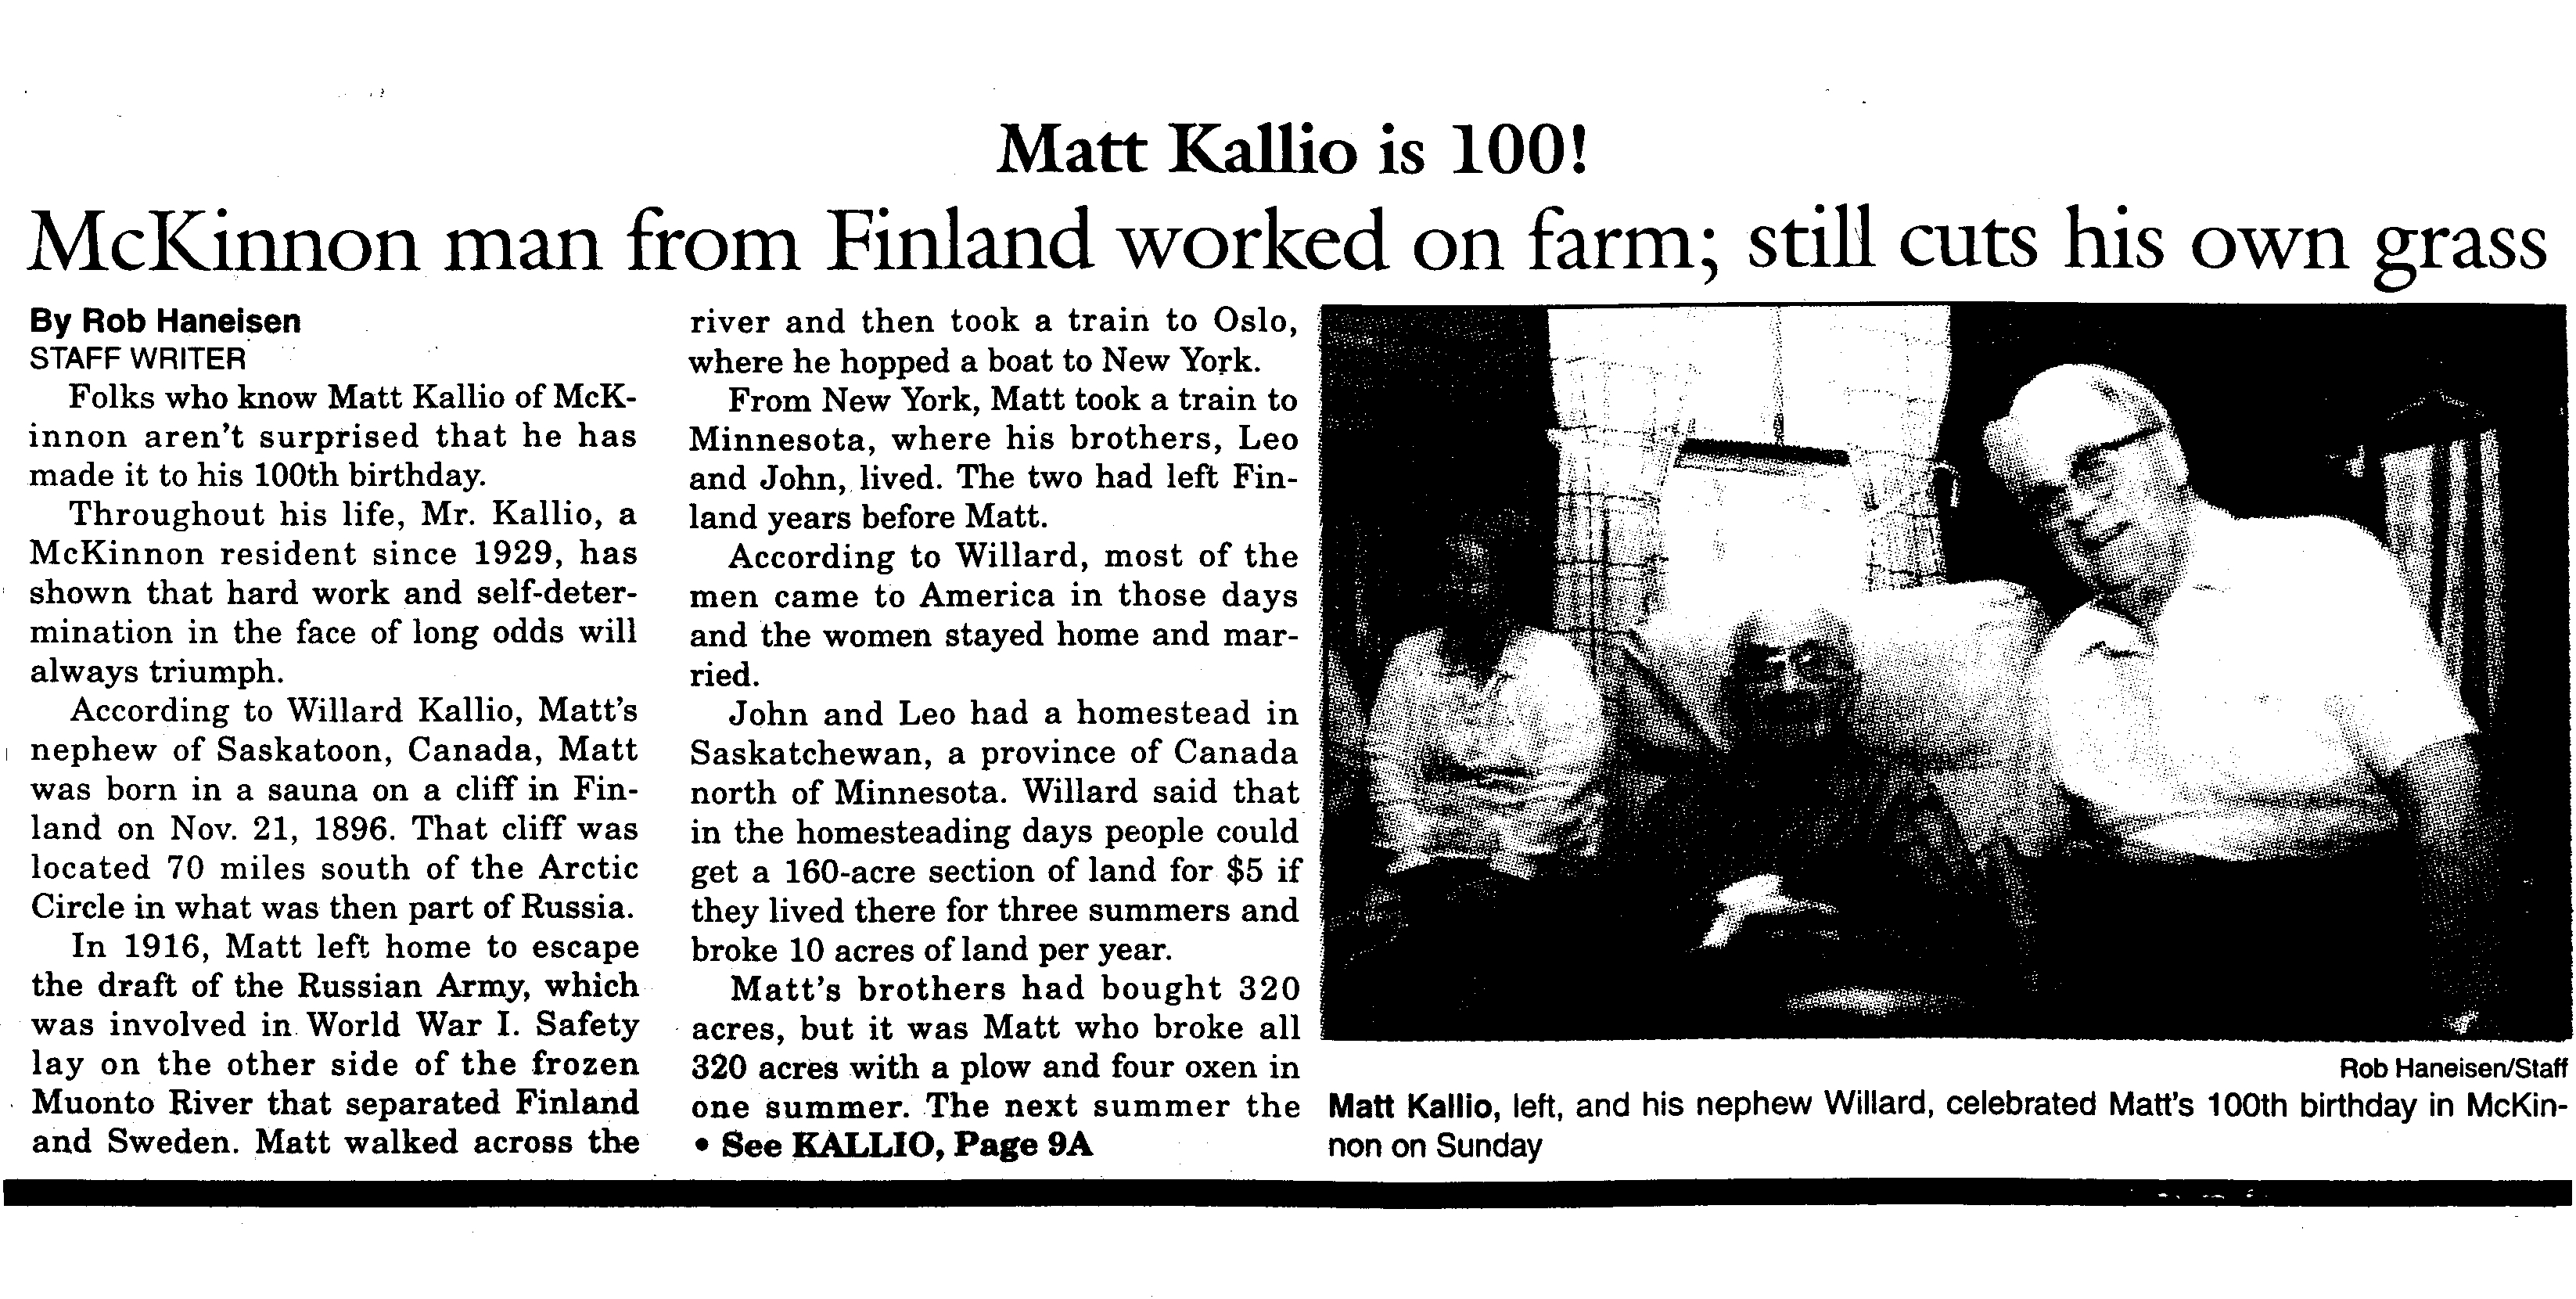 Matt Kallio 100th